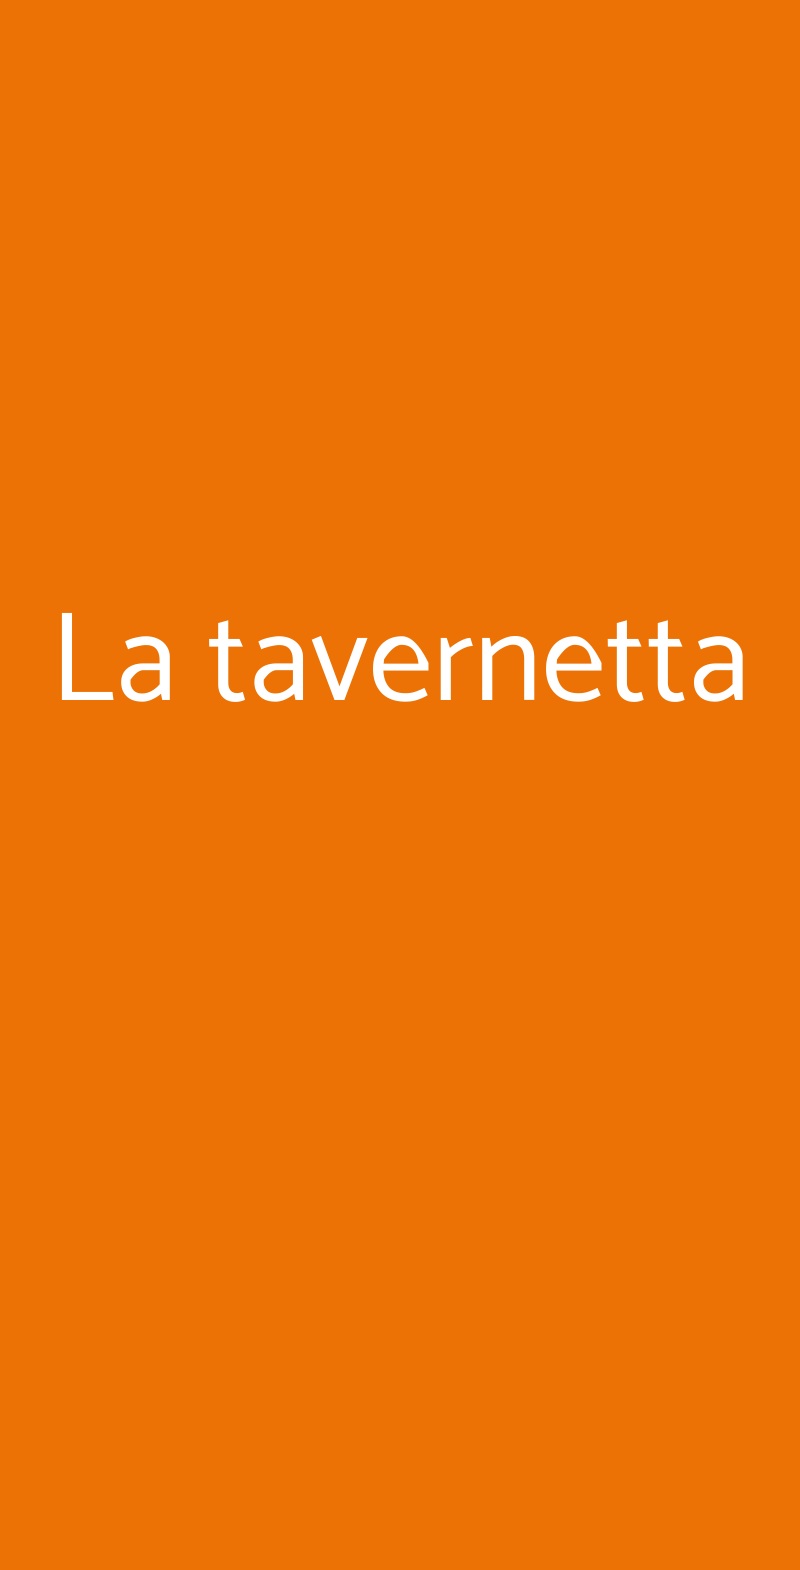 La tavernetta Milano menù 1 pagina